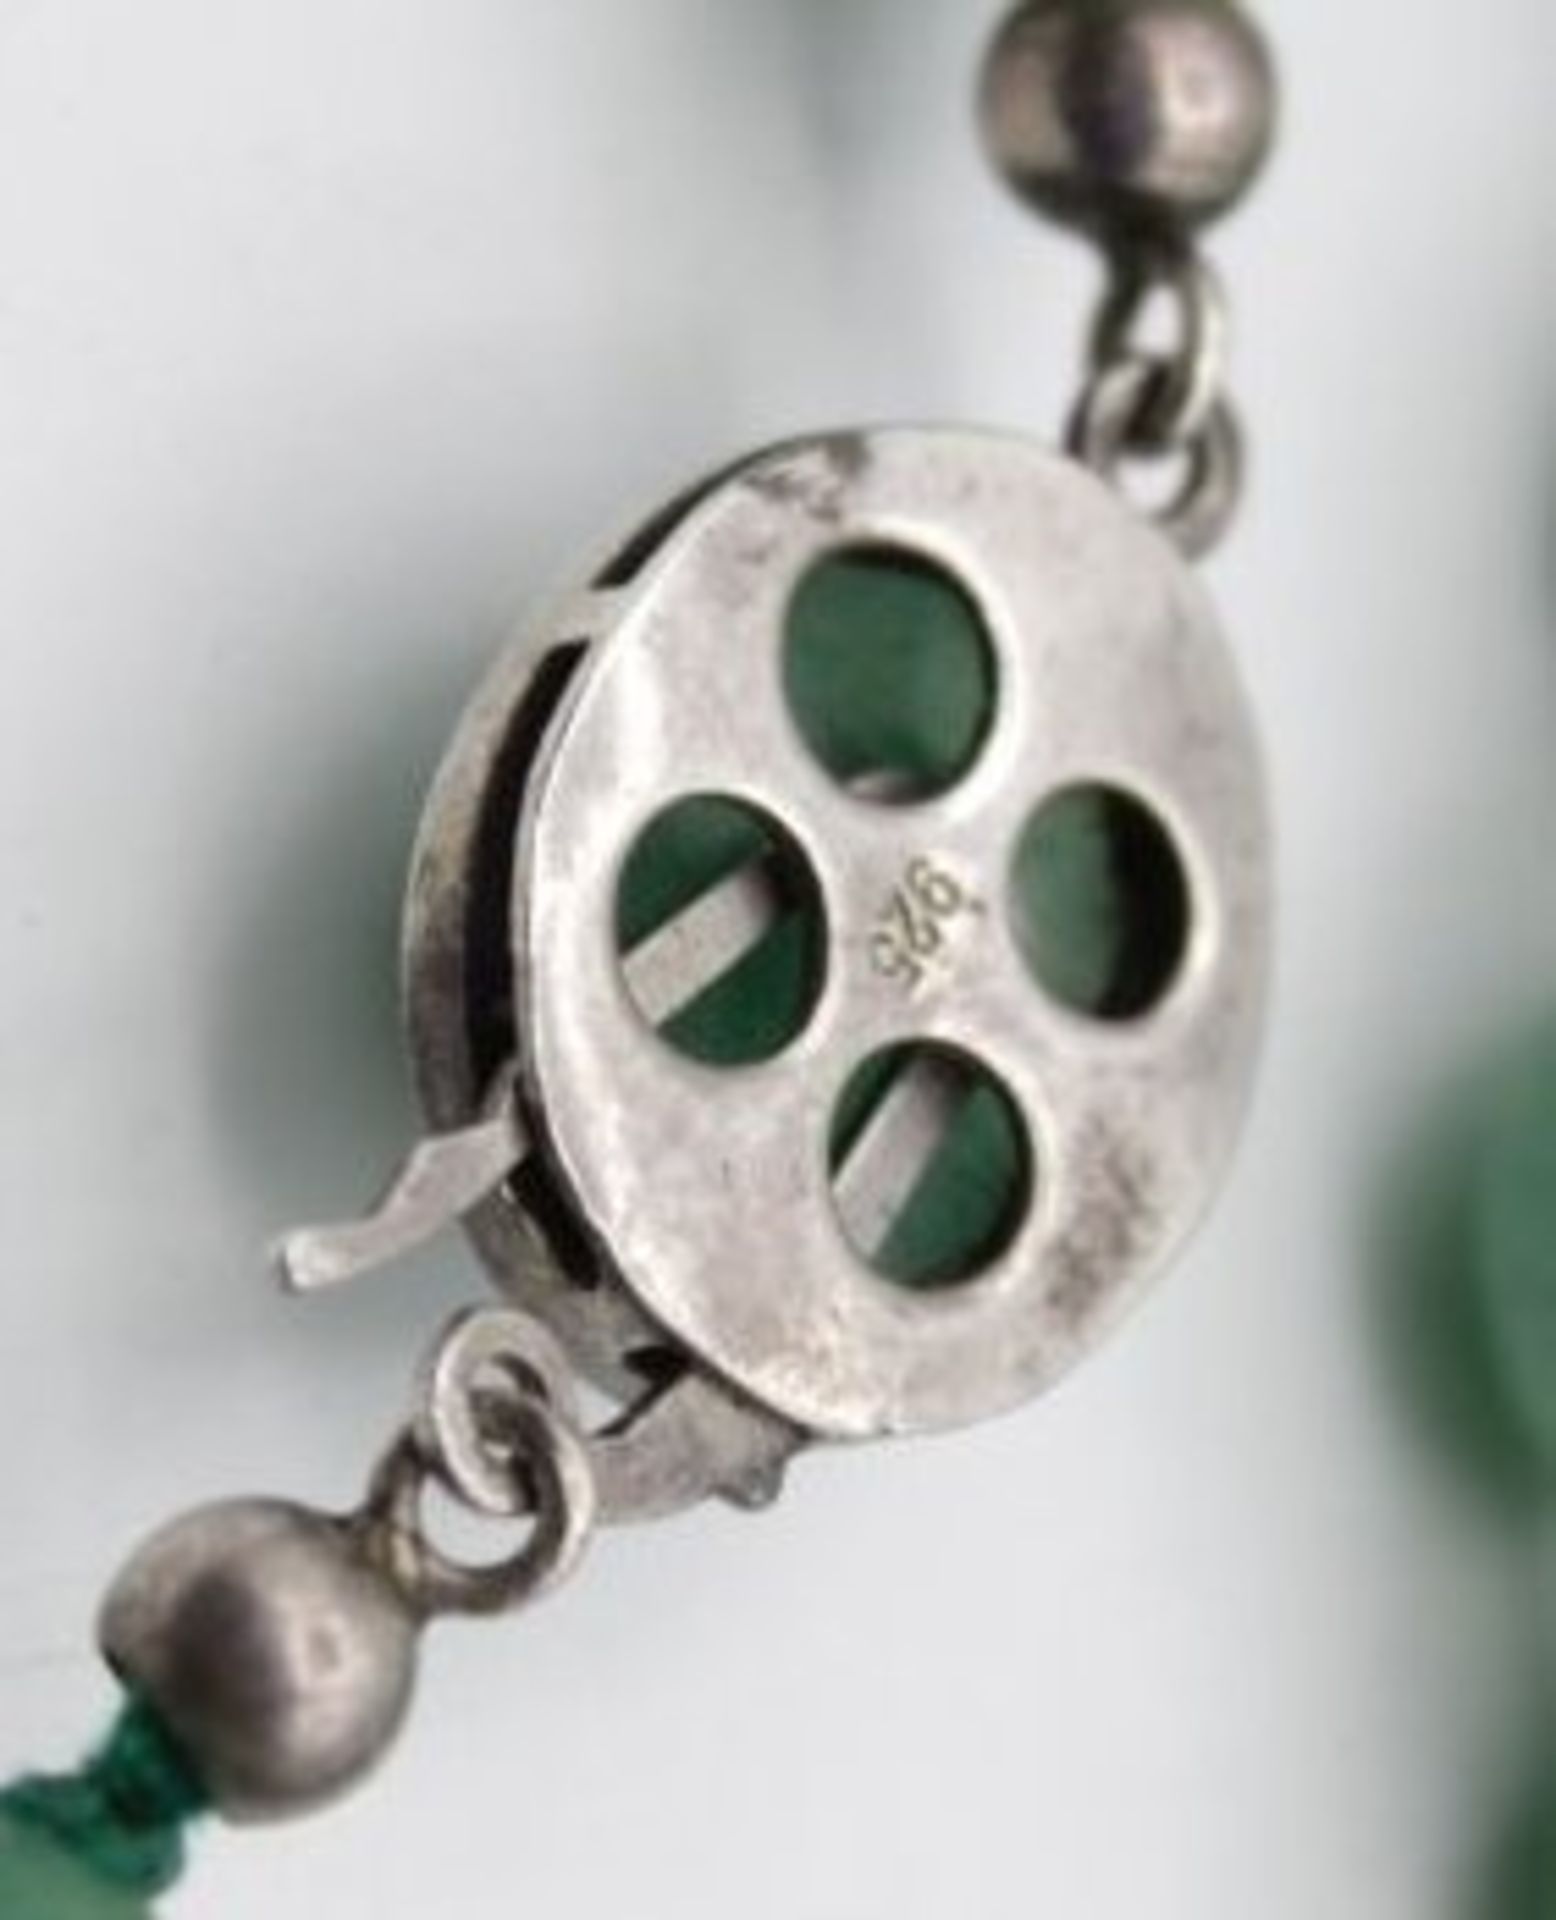 Halskette, poliert Kugeln, wohl Jade, 925er Silberschliesse, L-58cm. - Bild 3 aus 3